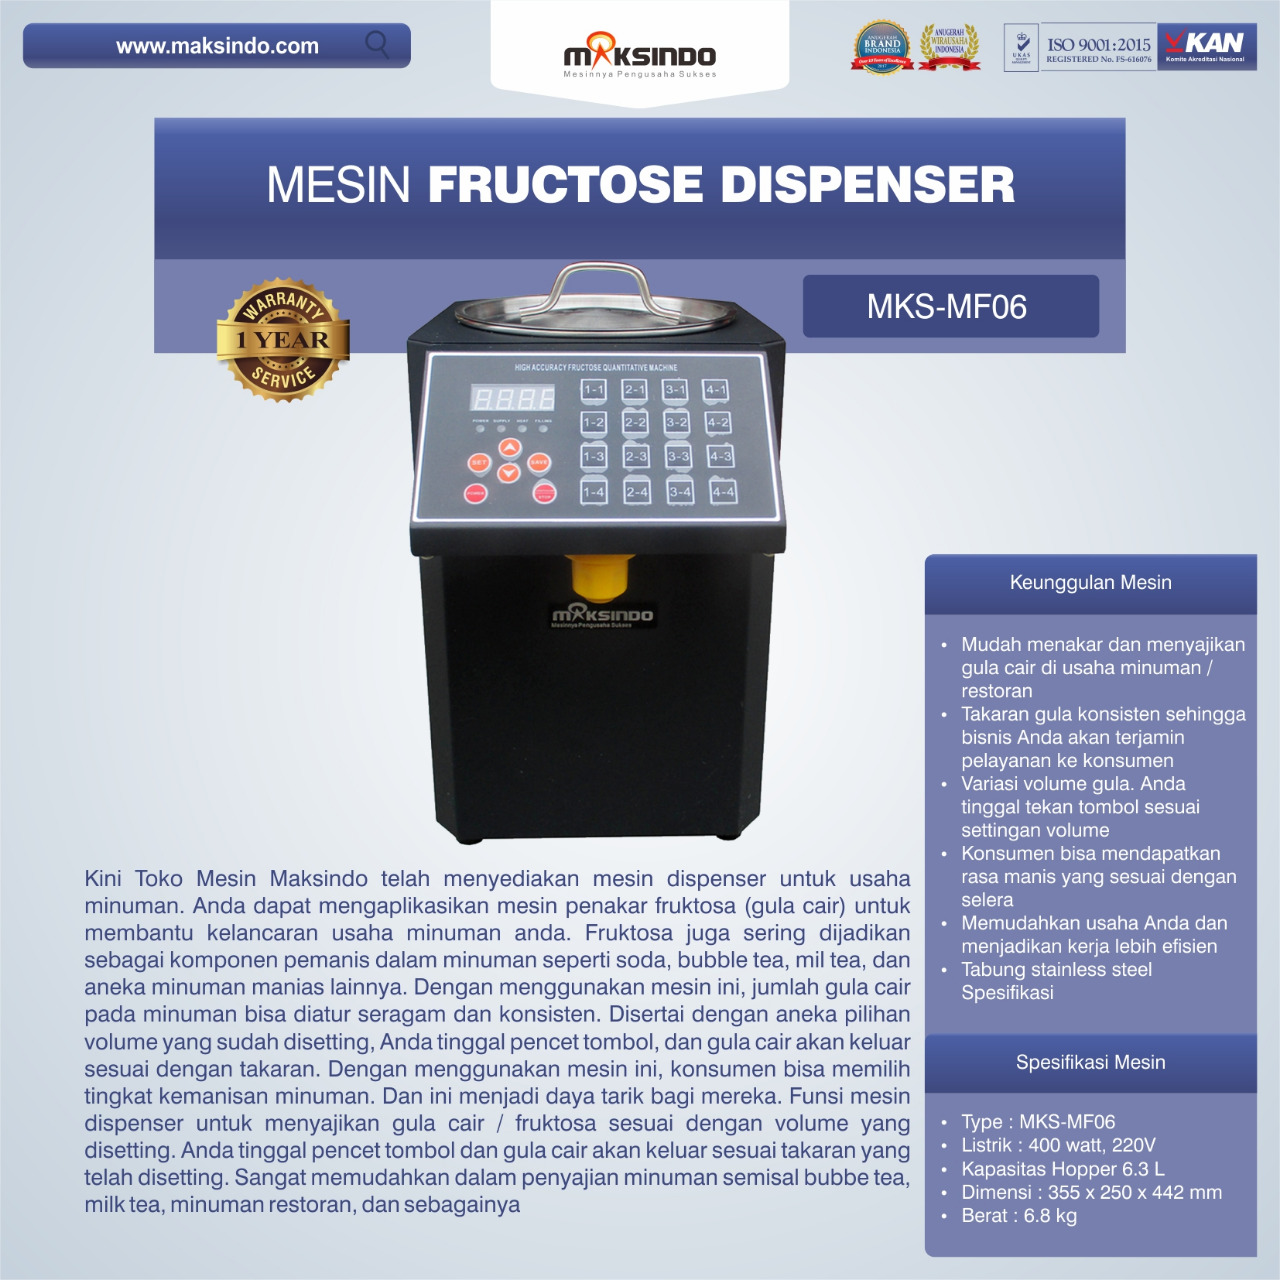 Jual Mesin Fructose Dispenser MKS-MF06 di Bogor